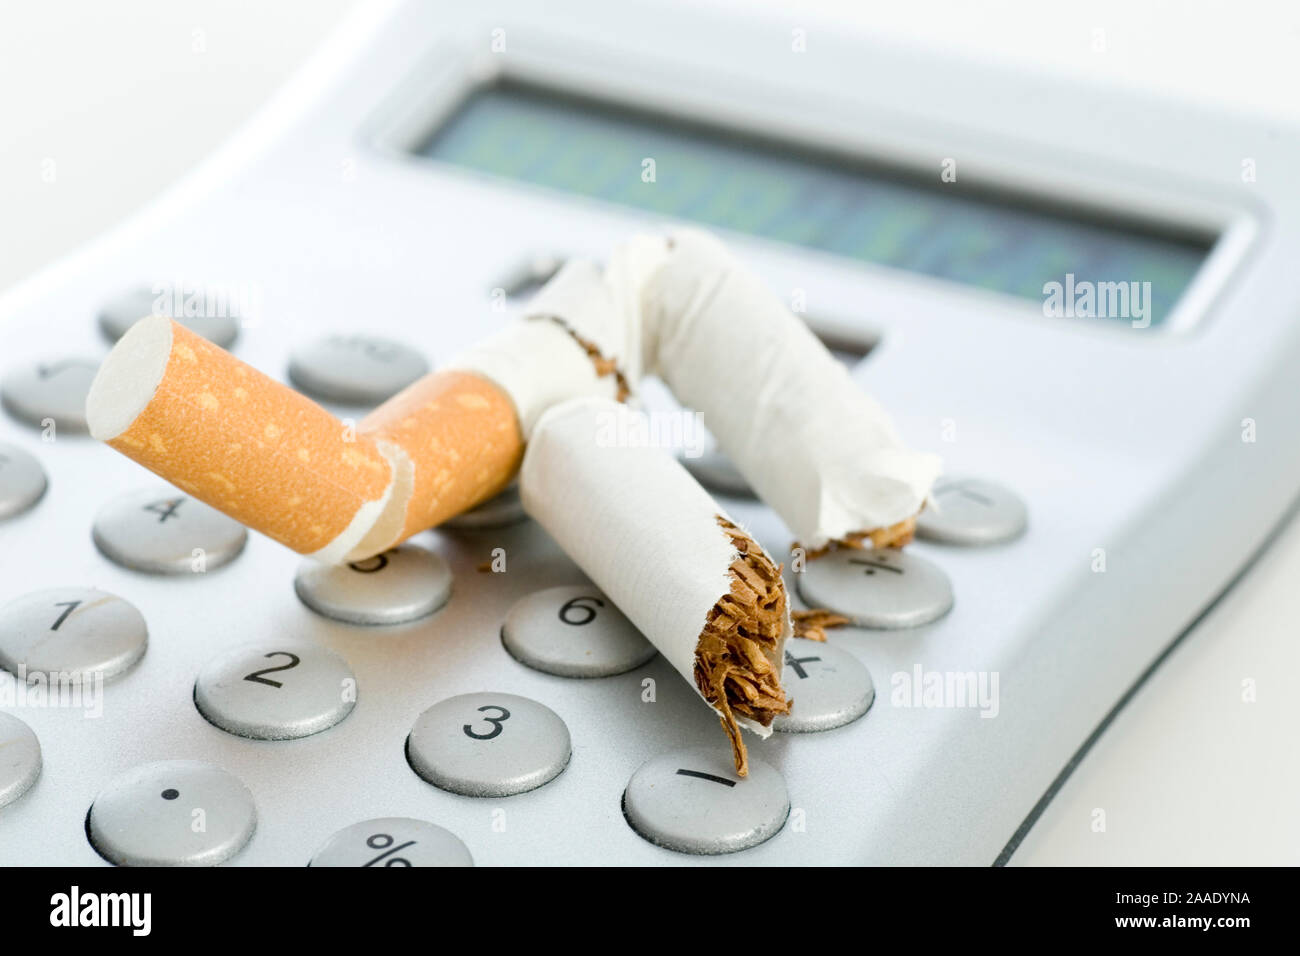 Zigarette ausgedrückte auf einem Taschenrechner Foto Stock